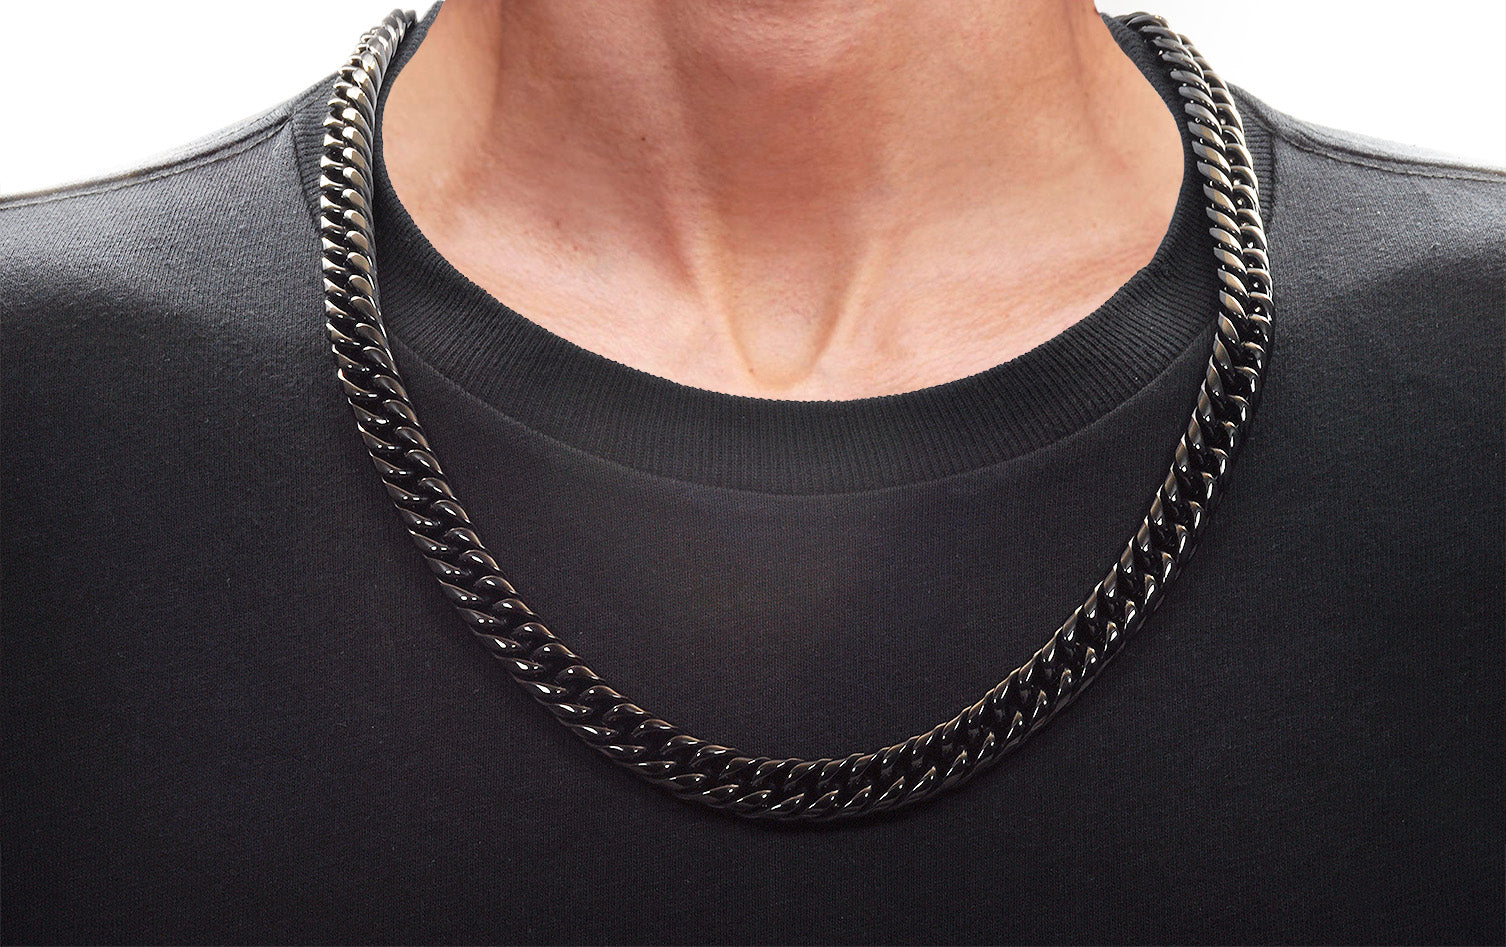 Men Casual Black Necklace - Buy Men Casual Black Necklace online in India